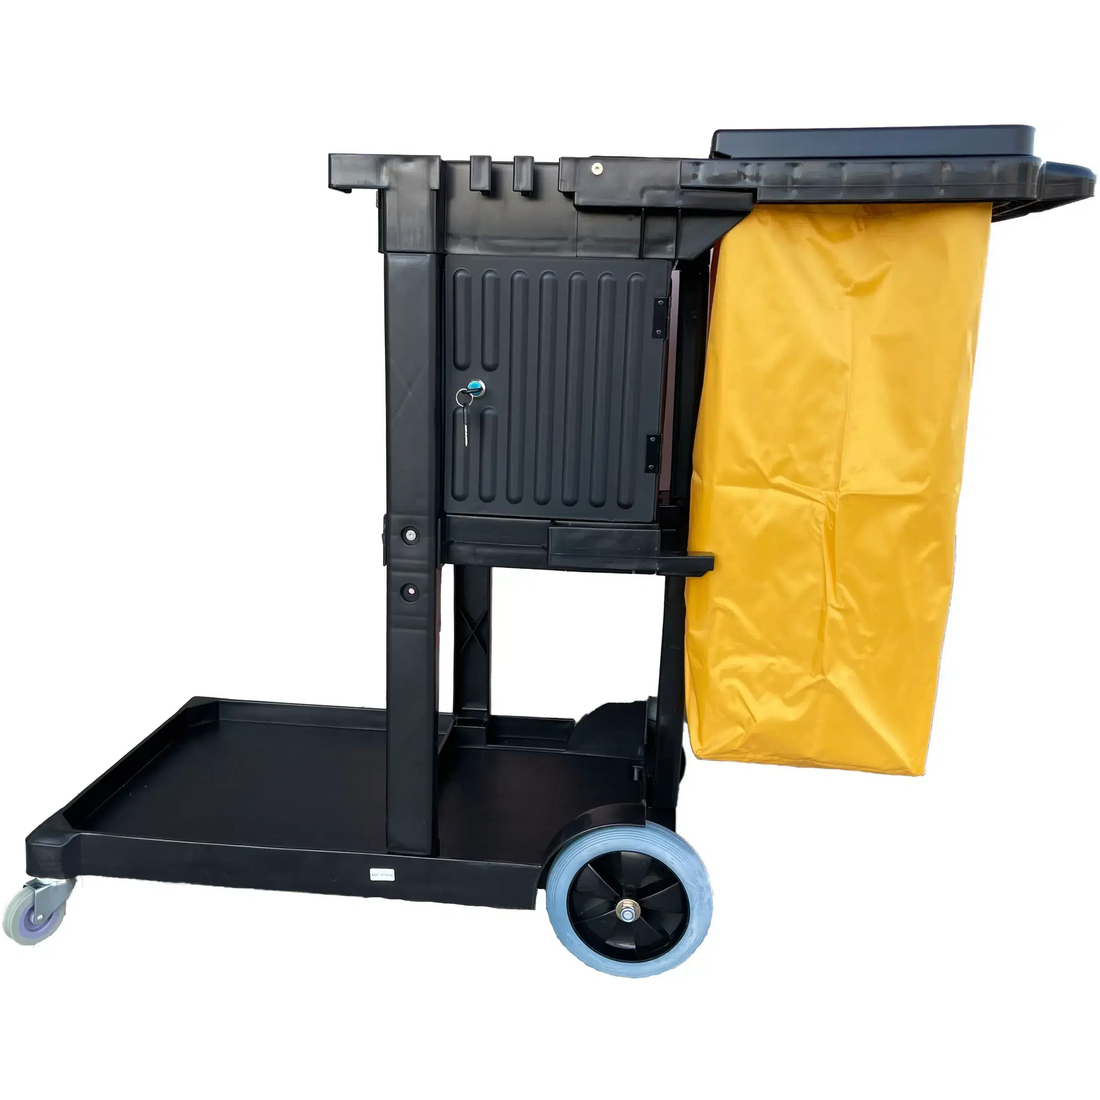 Everix – Janitor Cart with Lock Door